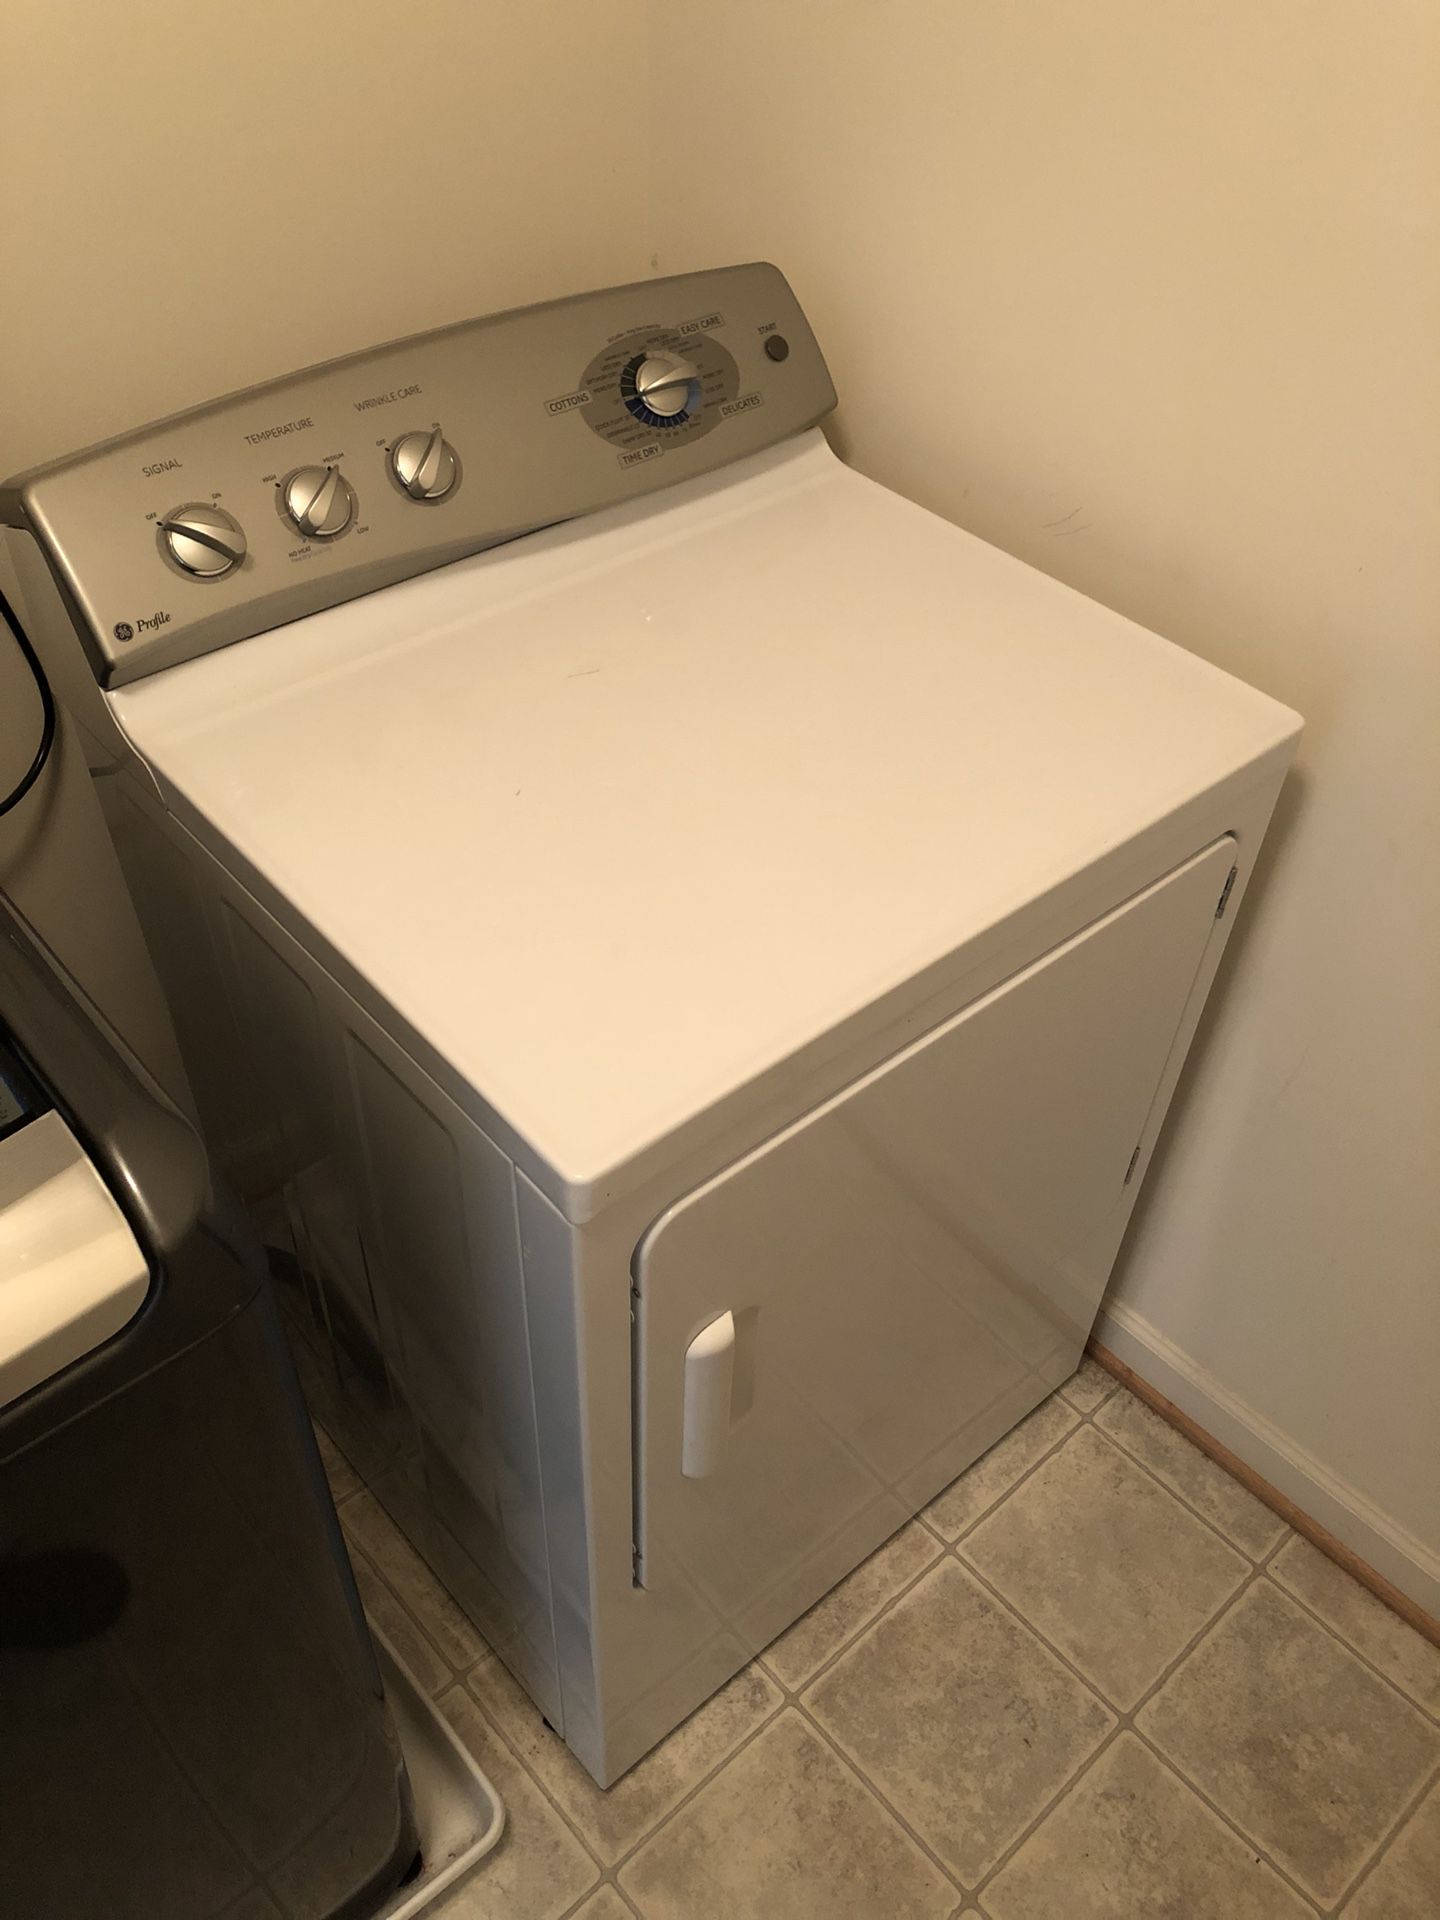 GE Profile Dryer (White/Silver)